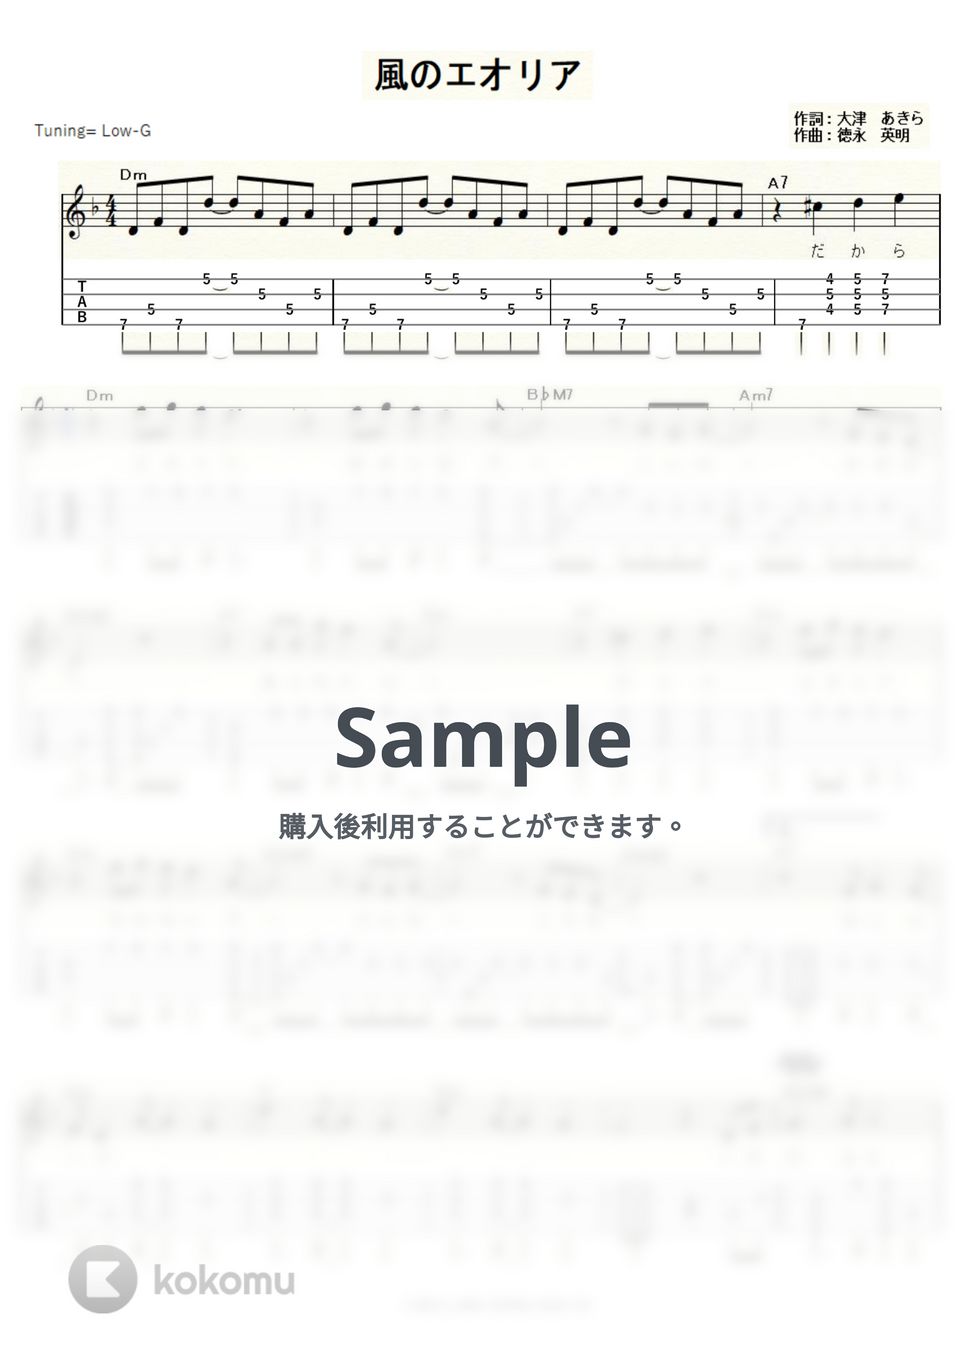 徳永英明 - 風のエオリア (ｳｸﾚﾚｿﾛ/Low-G/中級) by ukulelepapa